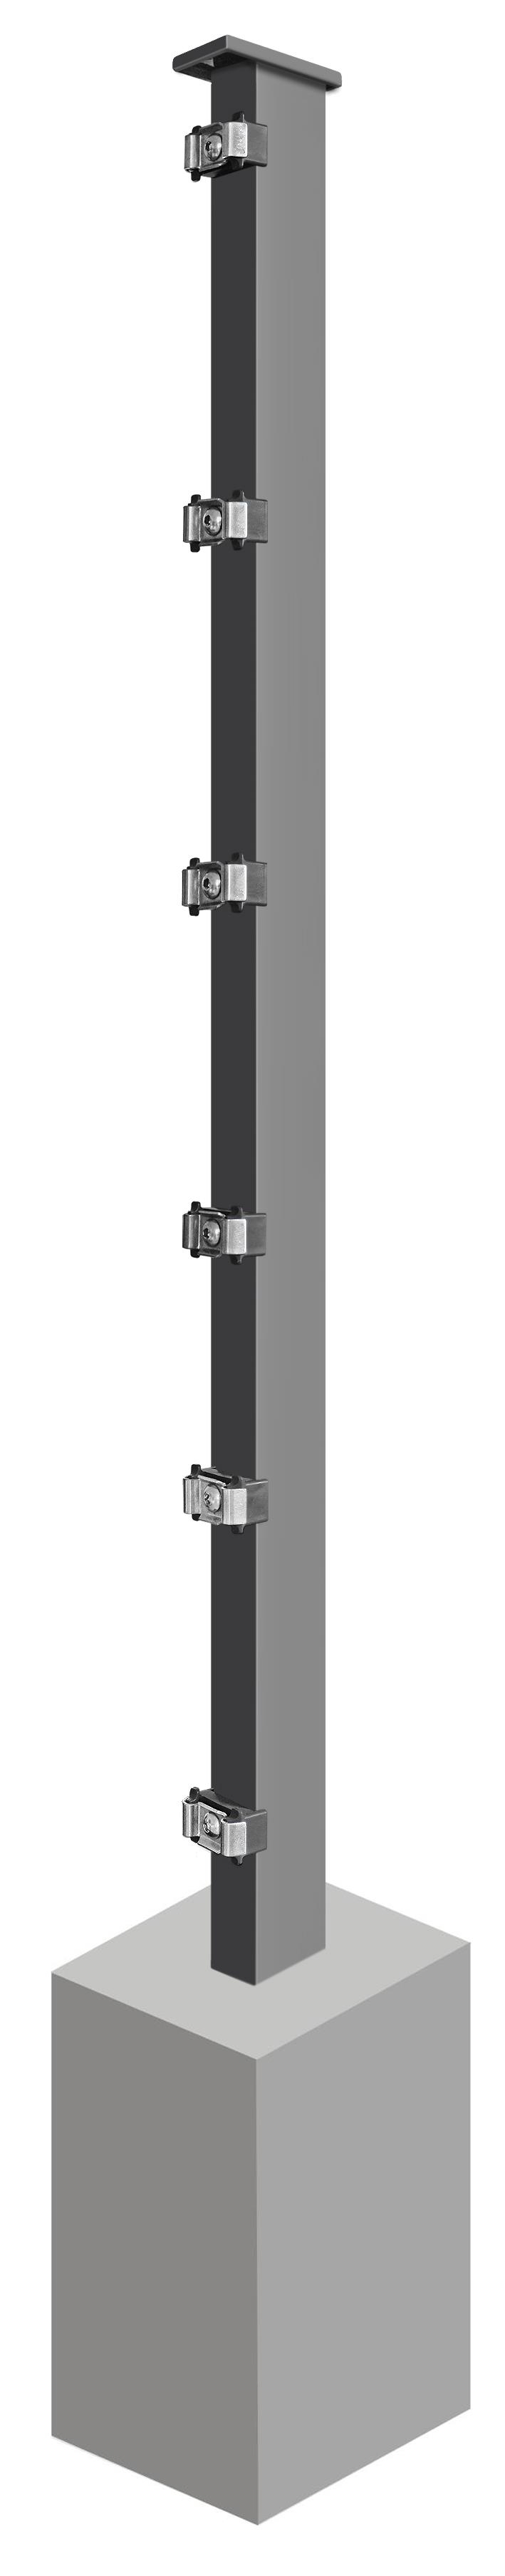 Pfosten System AC-Typ PLS, für Zaunhöhe 0.630 mm